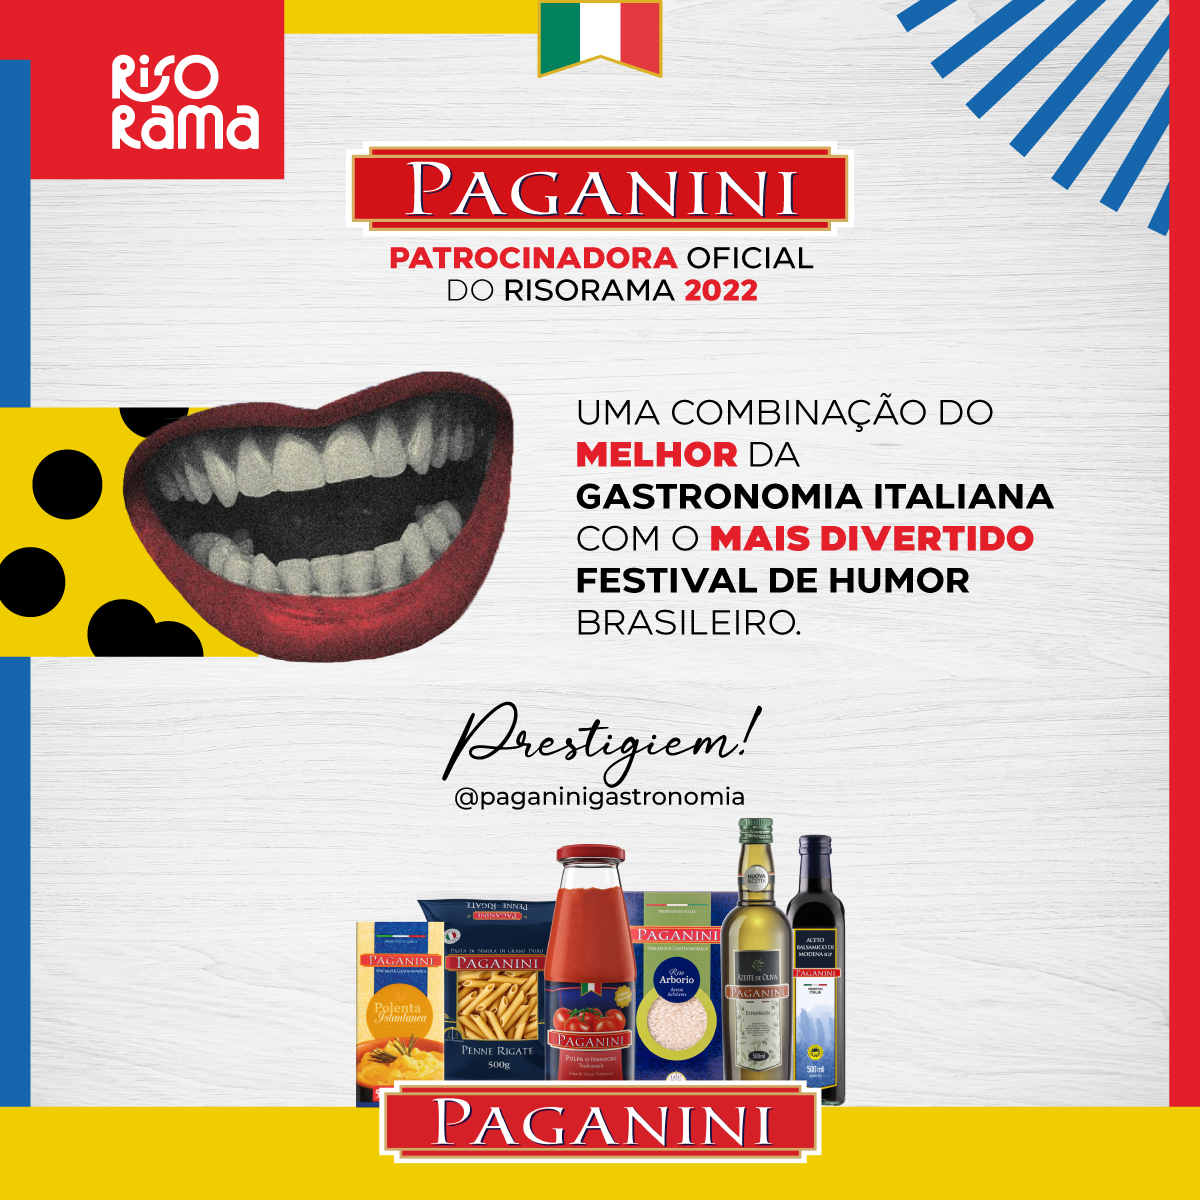 Paganini Patrocinadora Oficial do Risorama